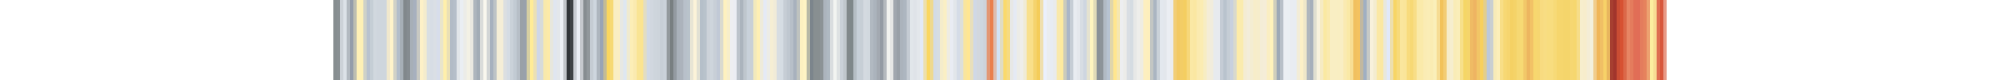 1850 ile 2020 yılları arasında Kaliforniya'da artan sıcaklıkları temsil eden renkli şeritler